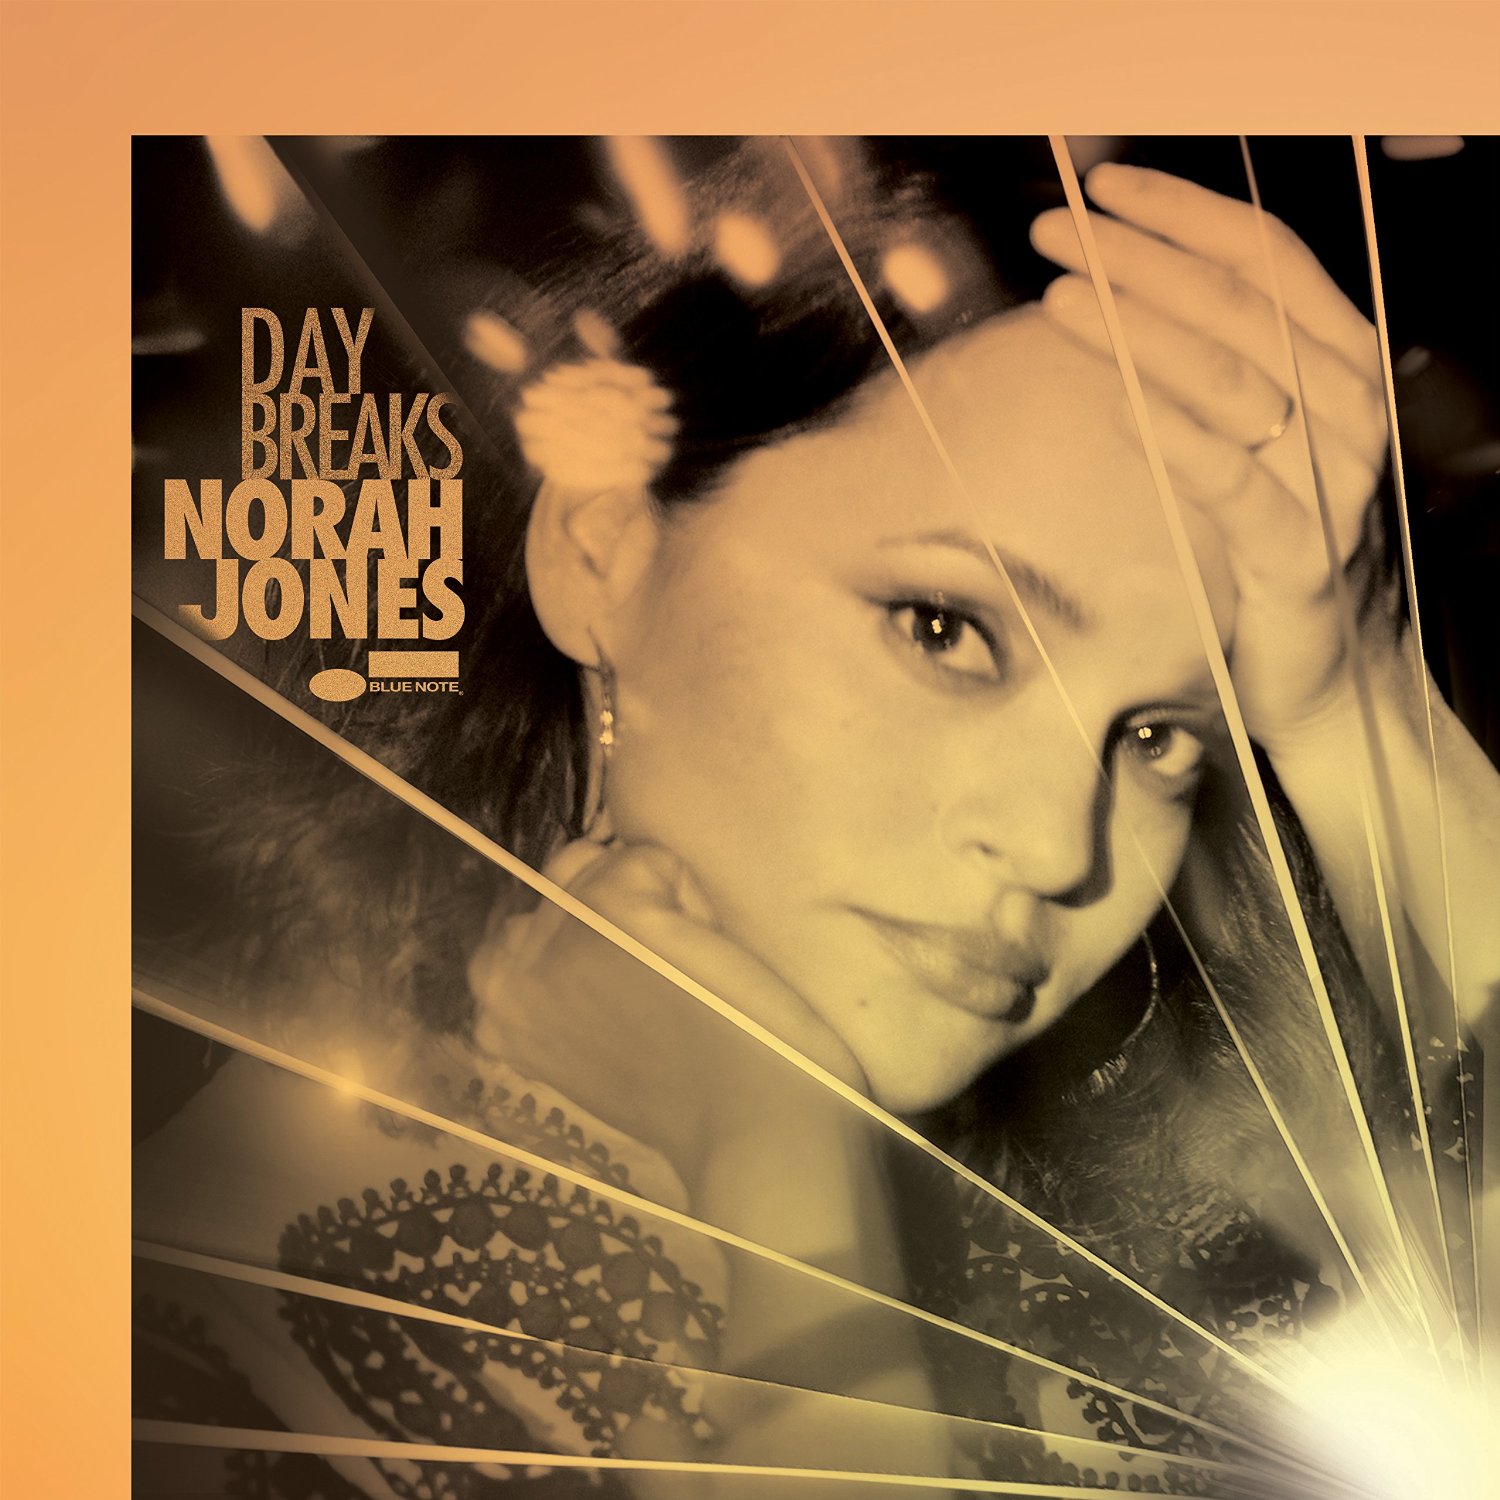 Norah Jones – Day Breaks (2016) [HDTracks FLAC 24bit/96kHz]